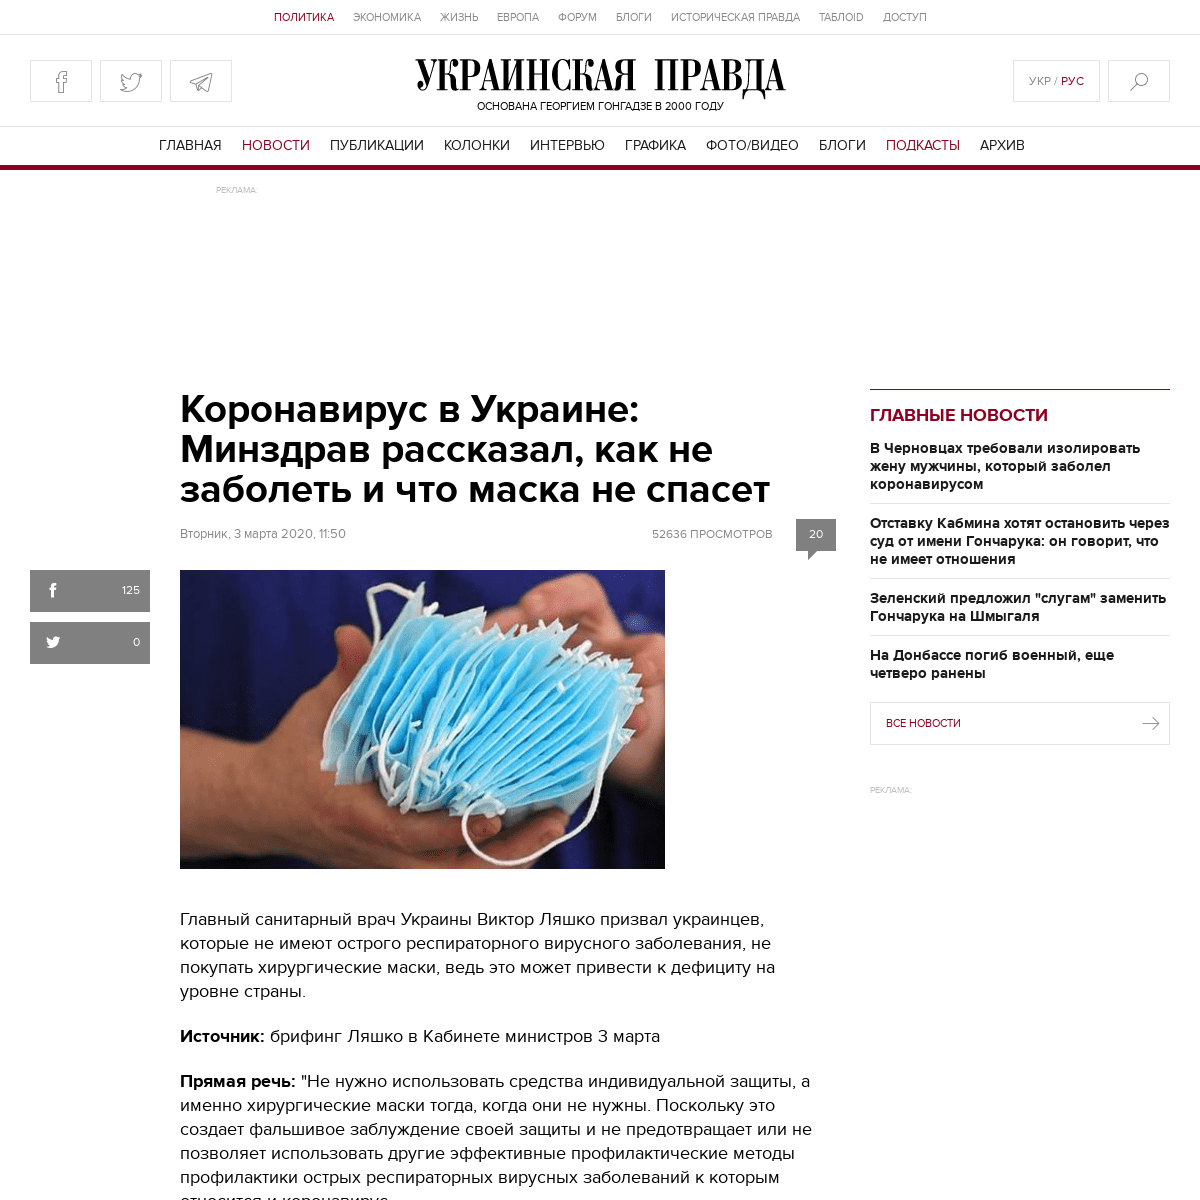 A complete backup of www.pravda.com.ua/rus/news/2020/03/3/7242338/